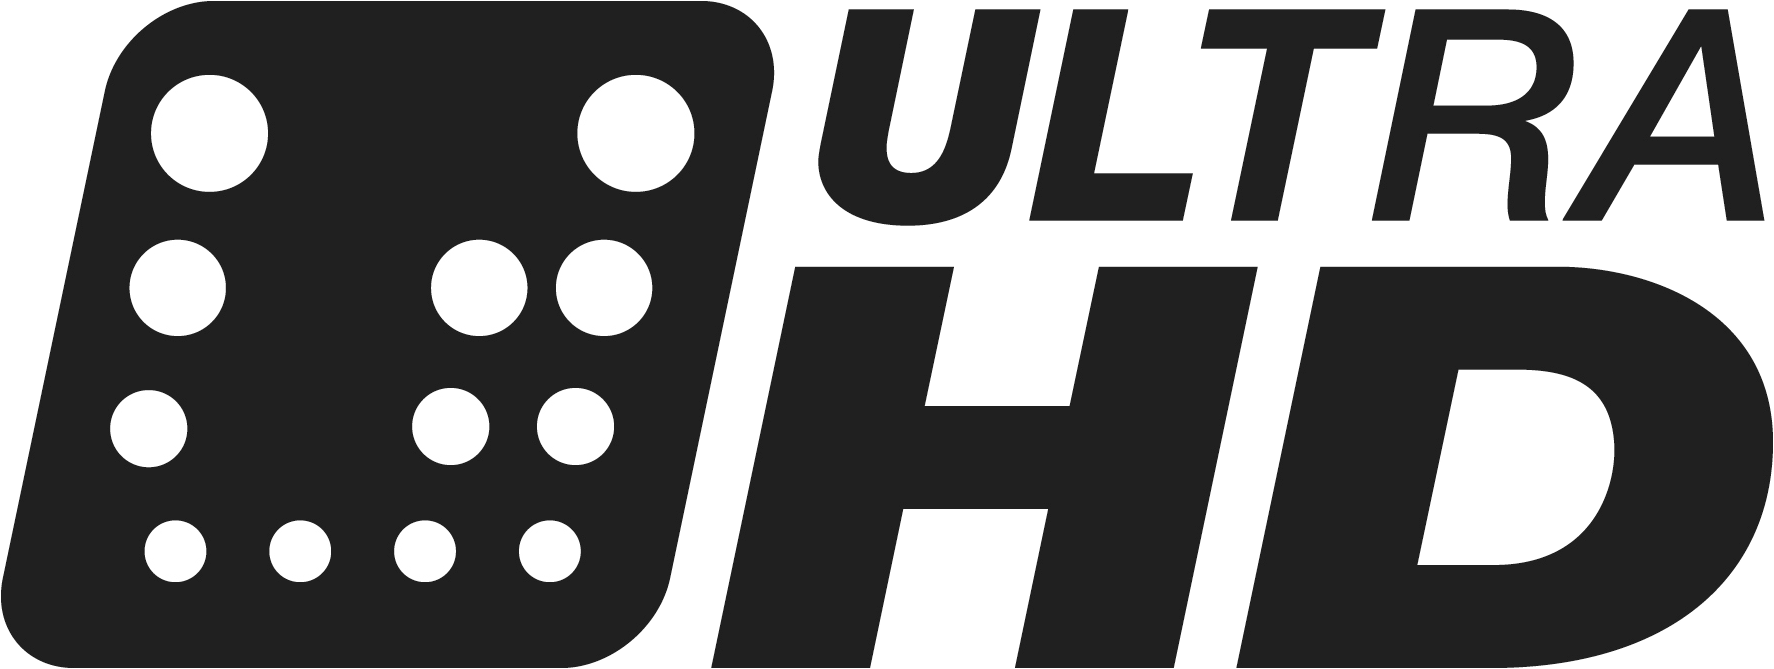 UHD Alliance stellt Standards und Logo für Ultra HD vor | 4K UHD / UHD